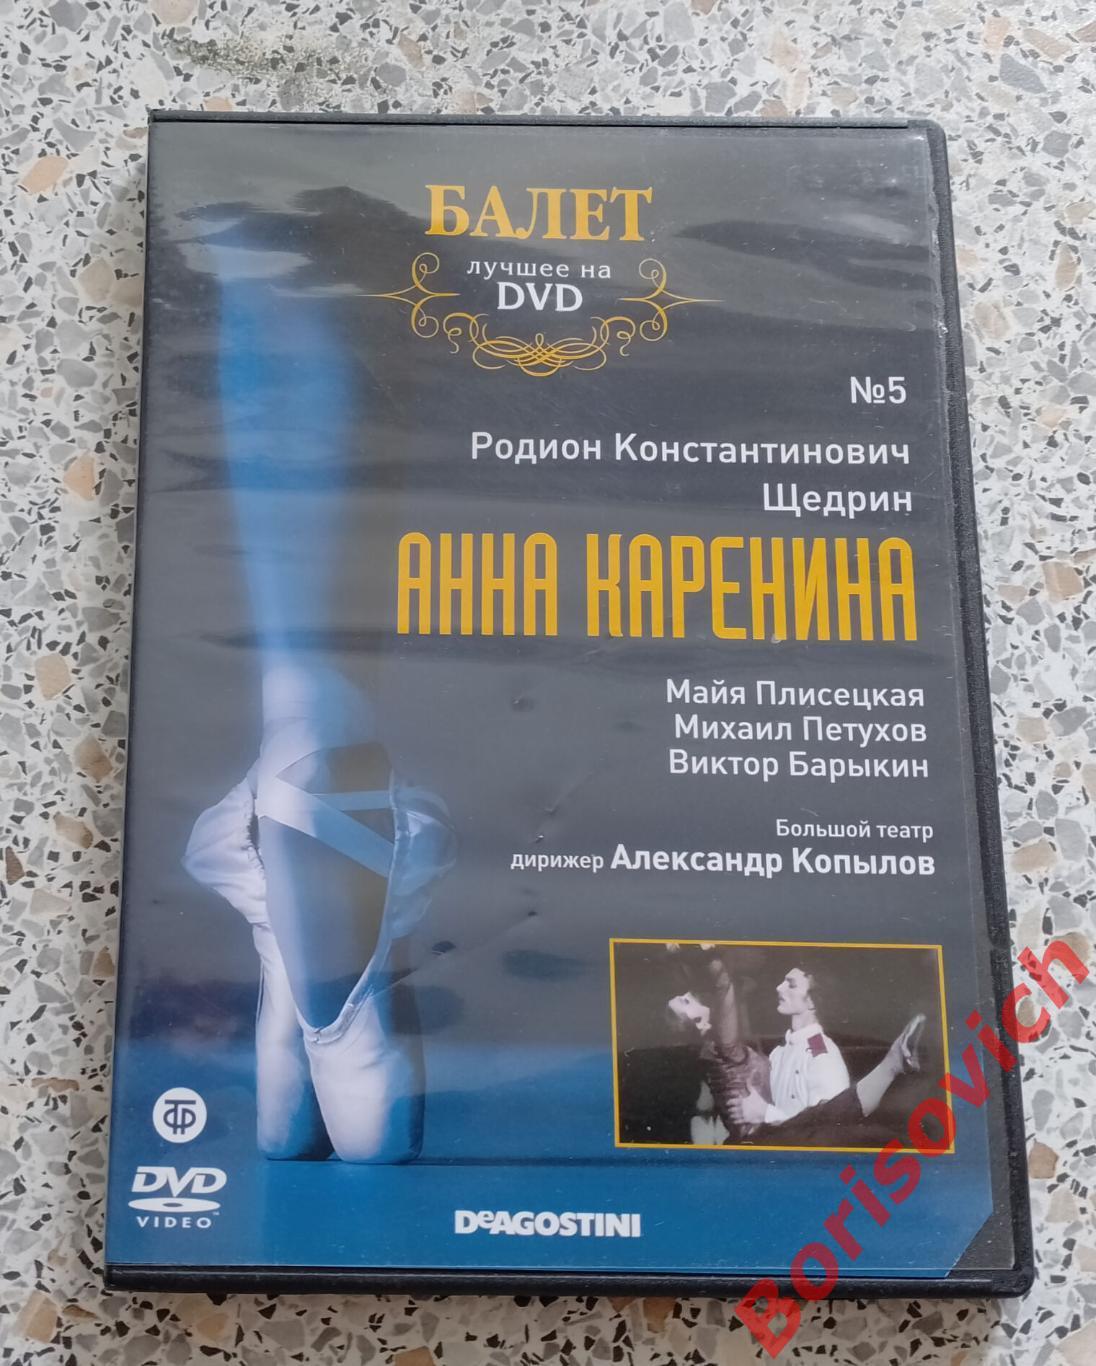 Балет лучшее на DVD Р. Щедрин Анна Каренина